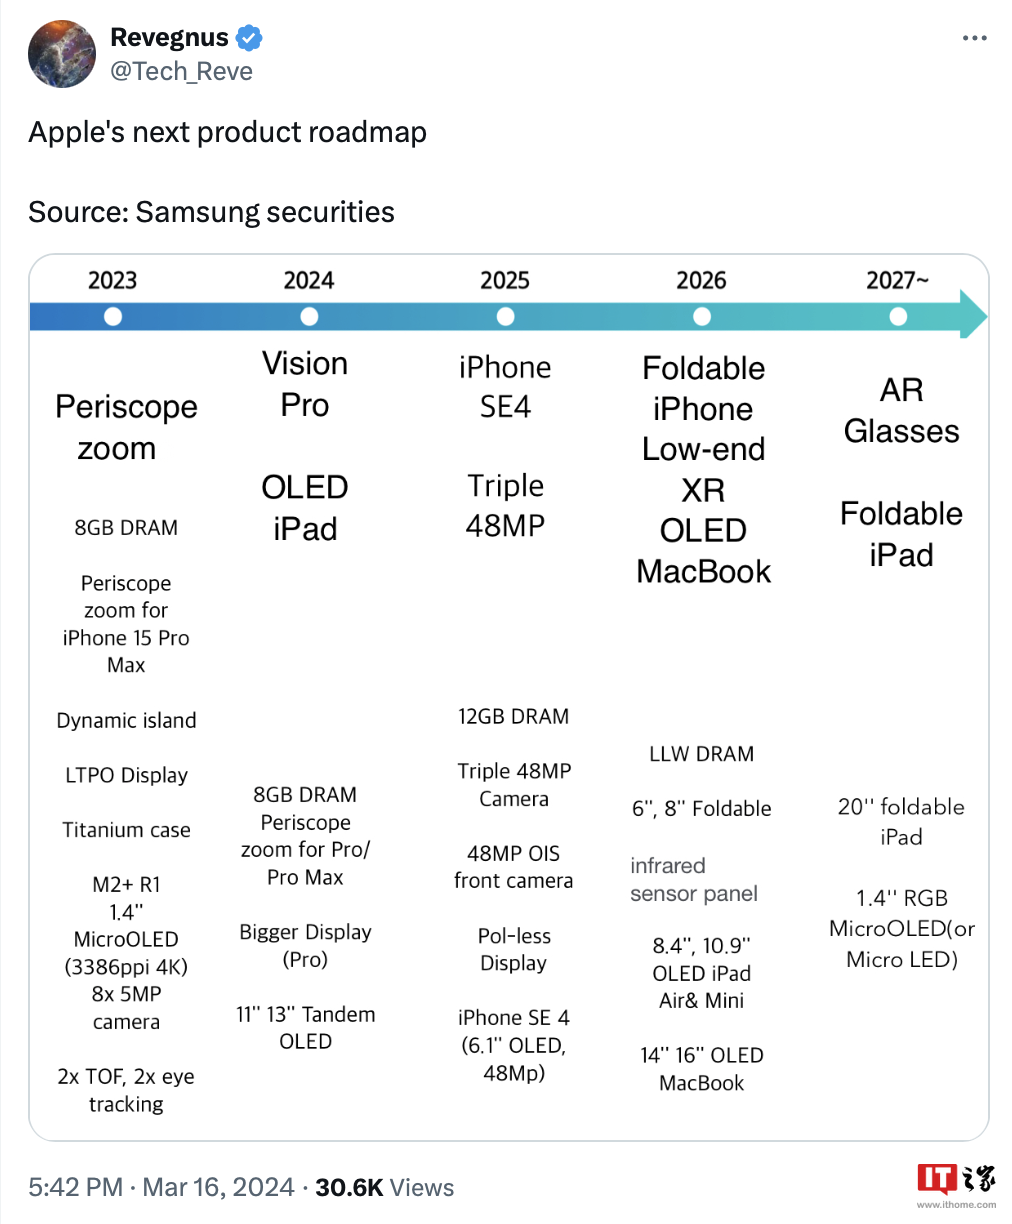 消息称苹果 iPhone SE 4 明年推出，折叠屏手机 / iPad 及 AR 眼镜定档 2026 年后